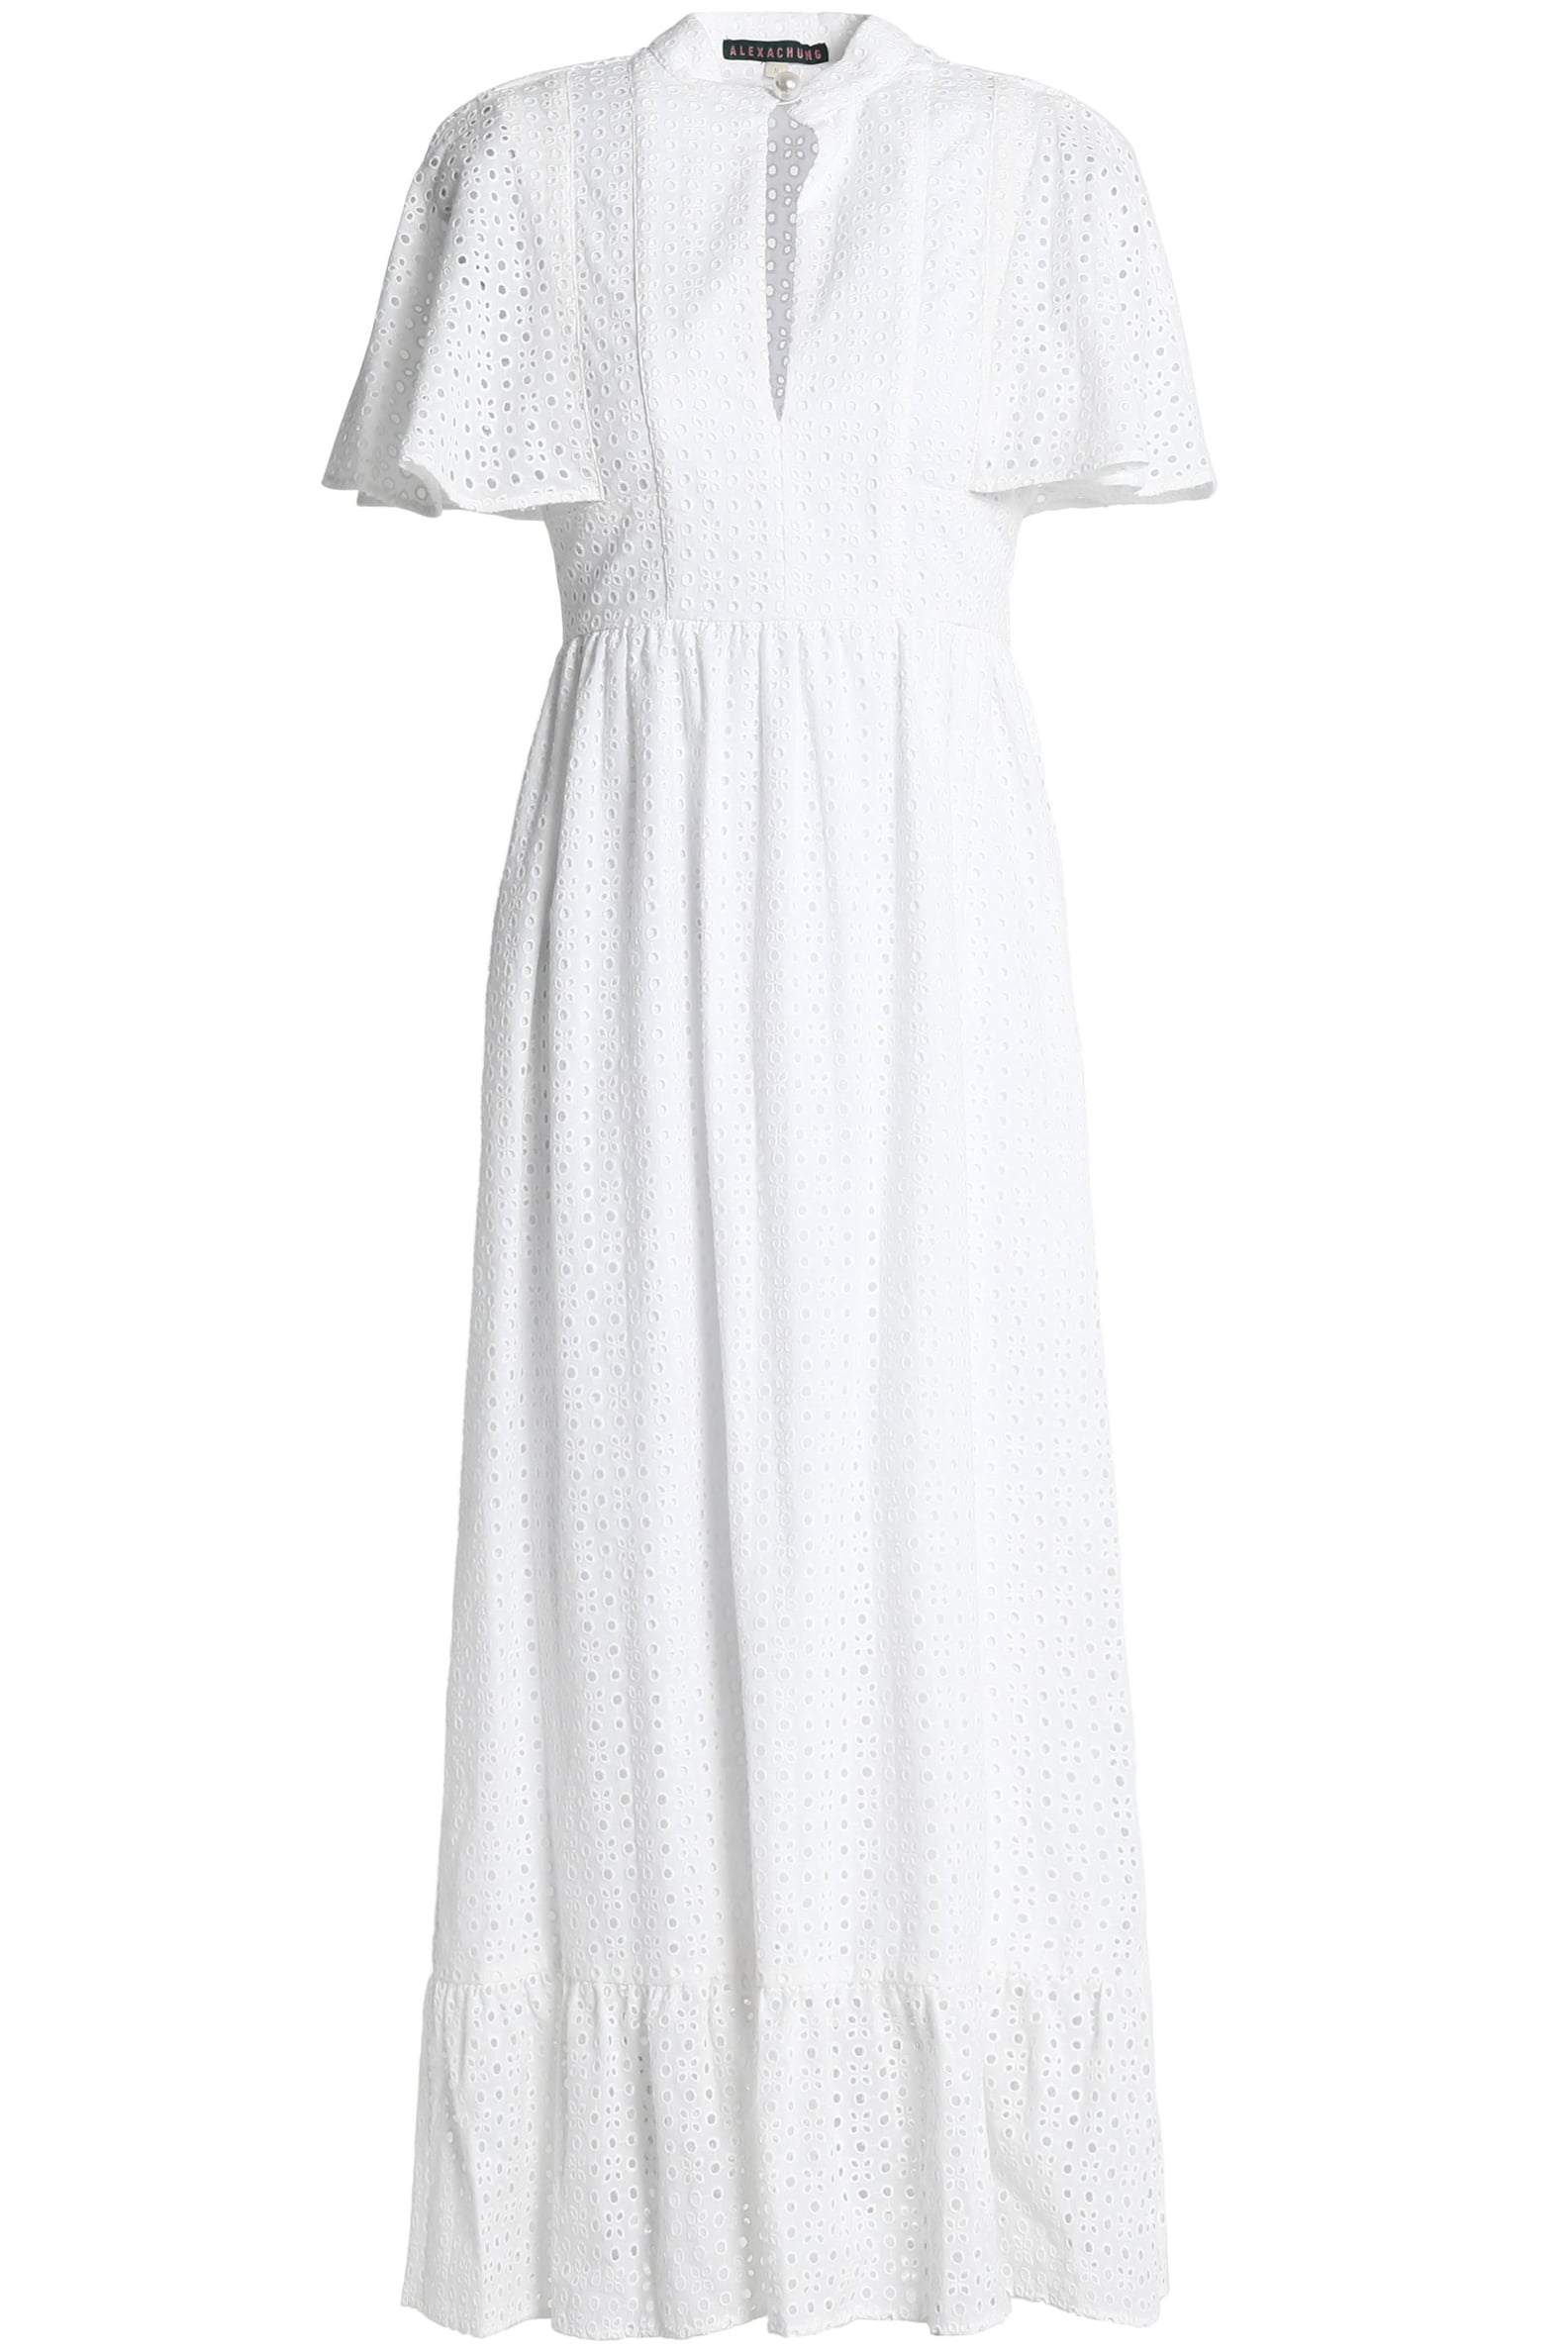 Pippa Middleton Anna Mason Dress at Wimbledon | POPSUGAR Fashion